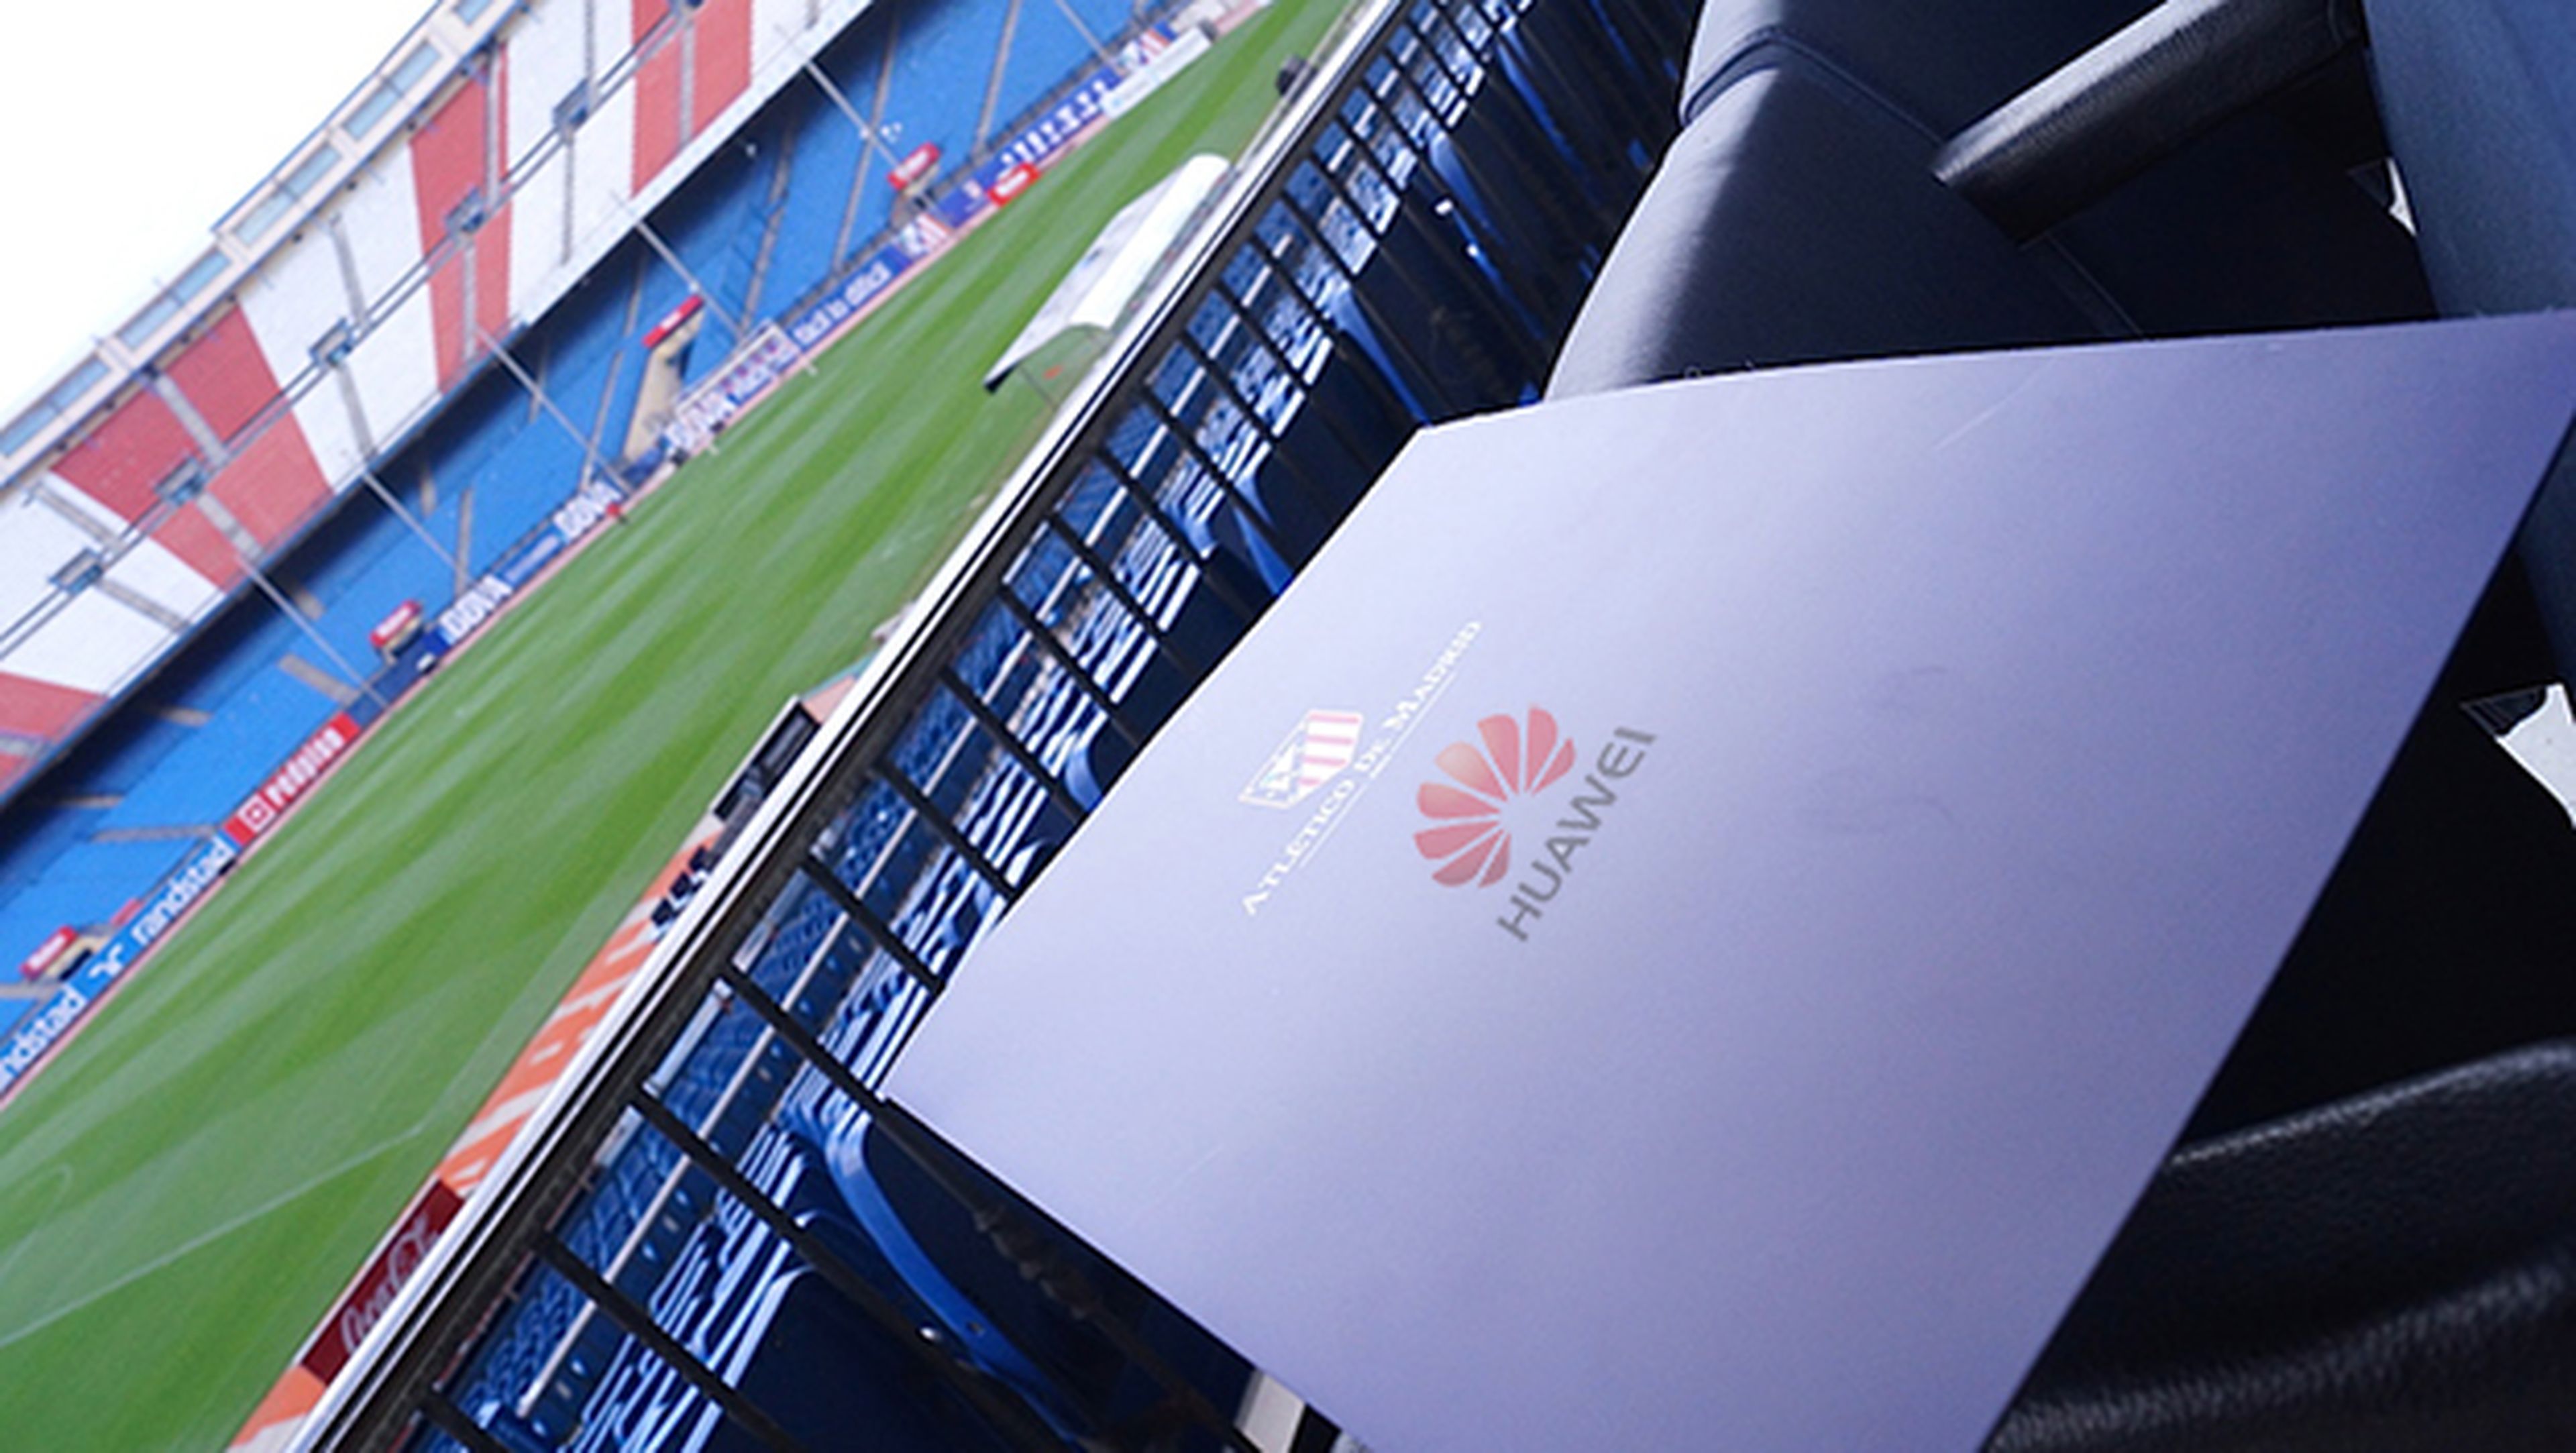 Huawei, nuevo partner del Atlético de Madrid